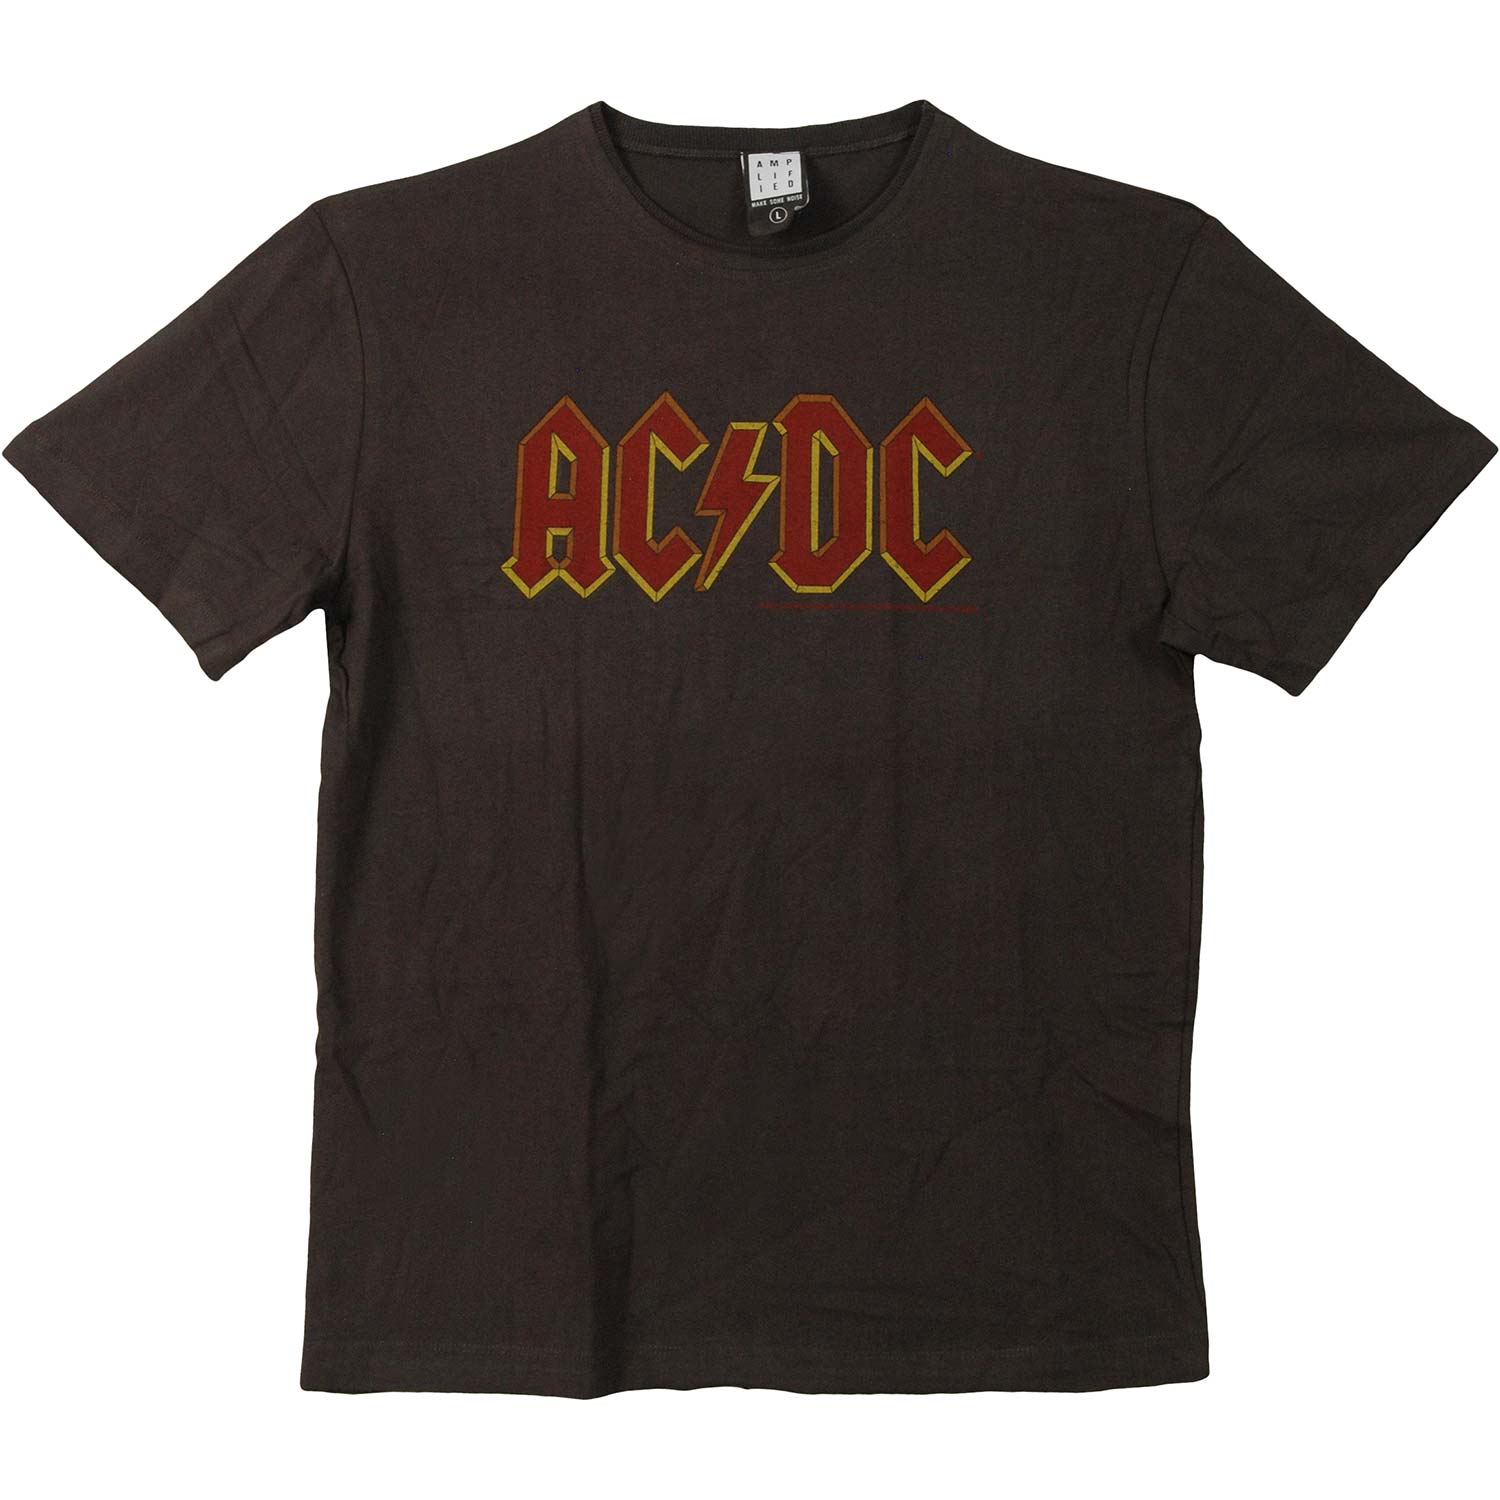 ACDC - AC/DC Men's Vintage T-shirt Charcoal - Walmart.com - Walmart.com